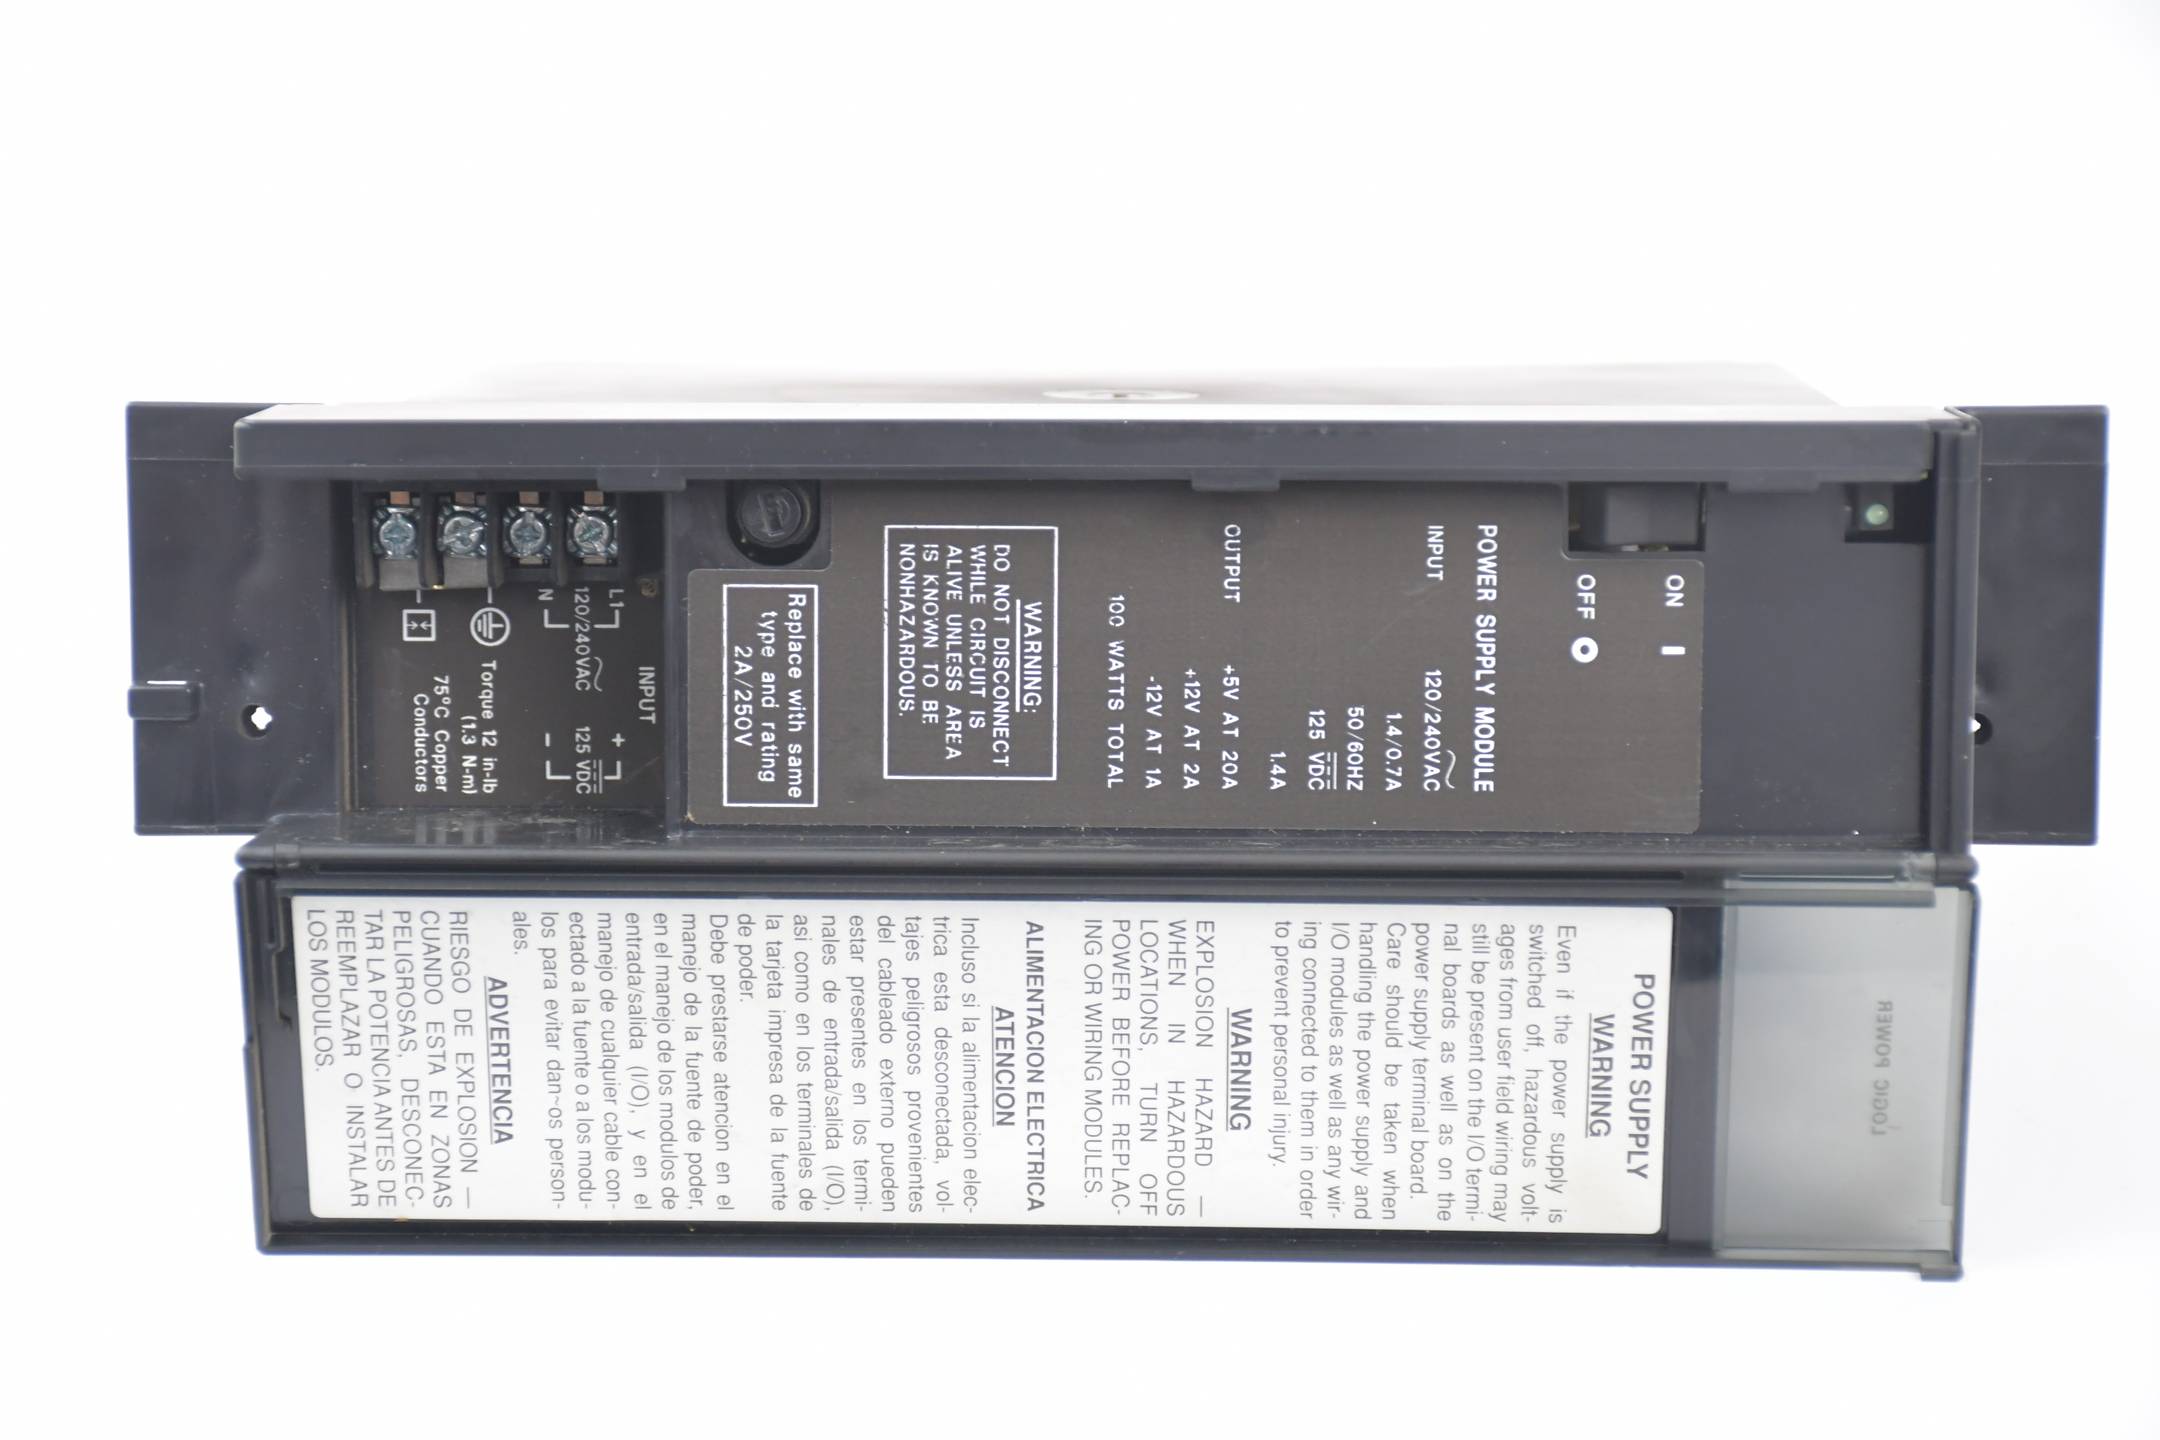 GE Fanuc Stromversorgung Series 90-70 Programmierbare Steuerung IC697PWR711J